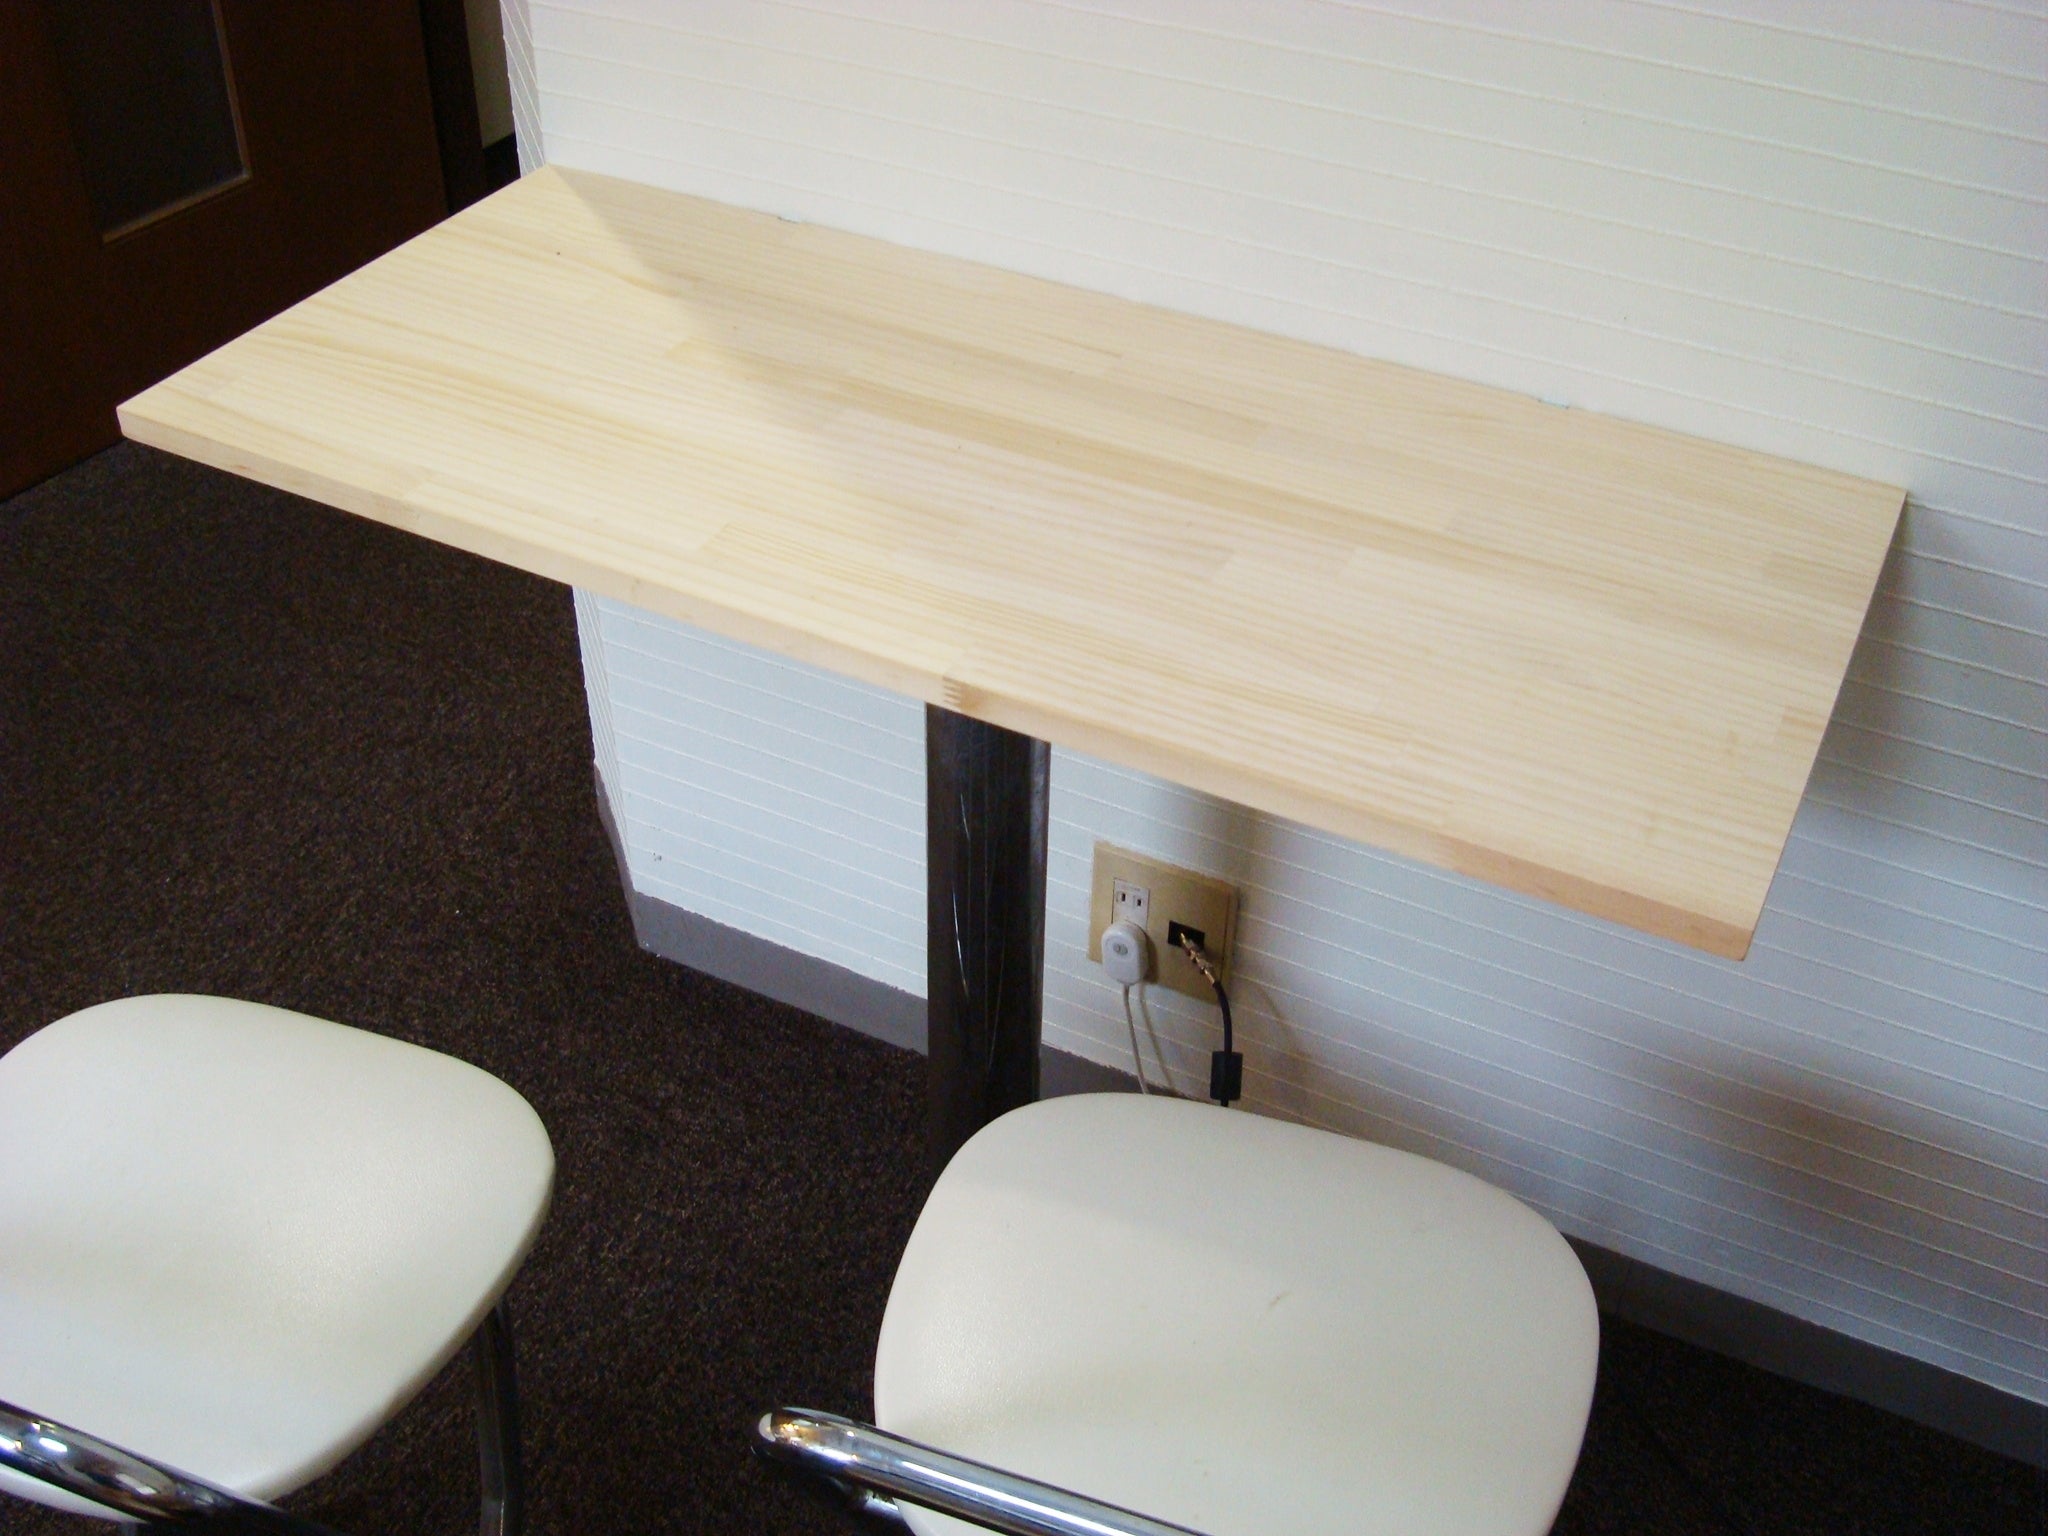 テーブル作業台アンジェリックカウンターテーブル パイン集成材 幅170  天板メープルニスピカピカ